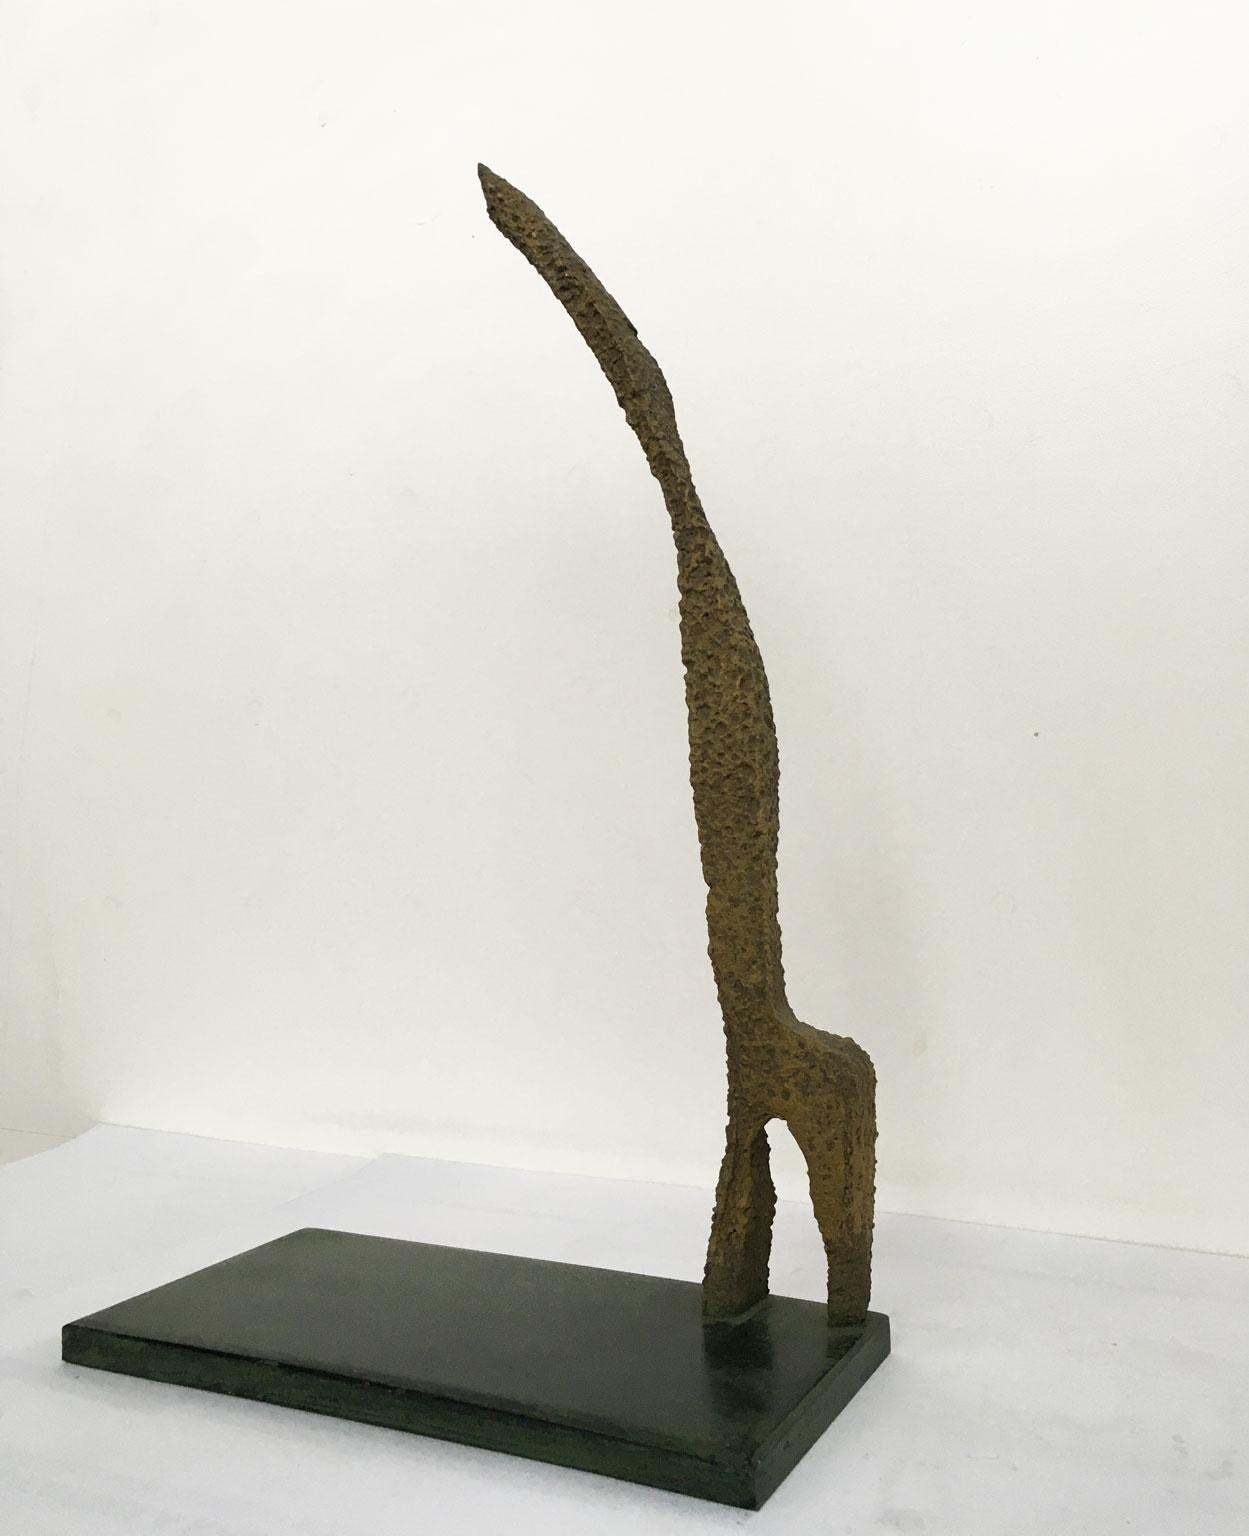 italian sculptor giacometti